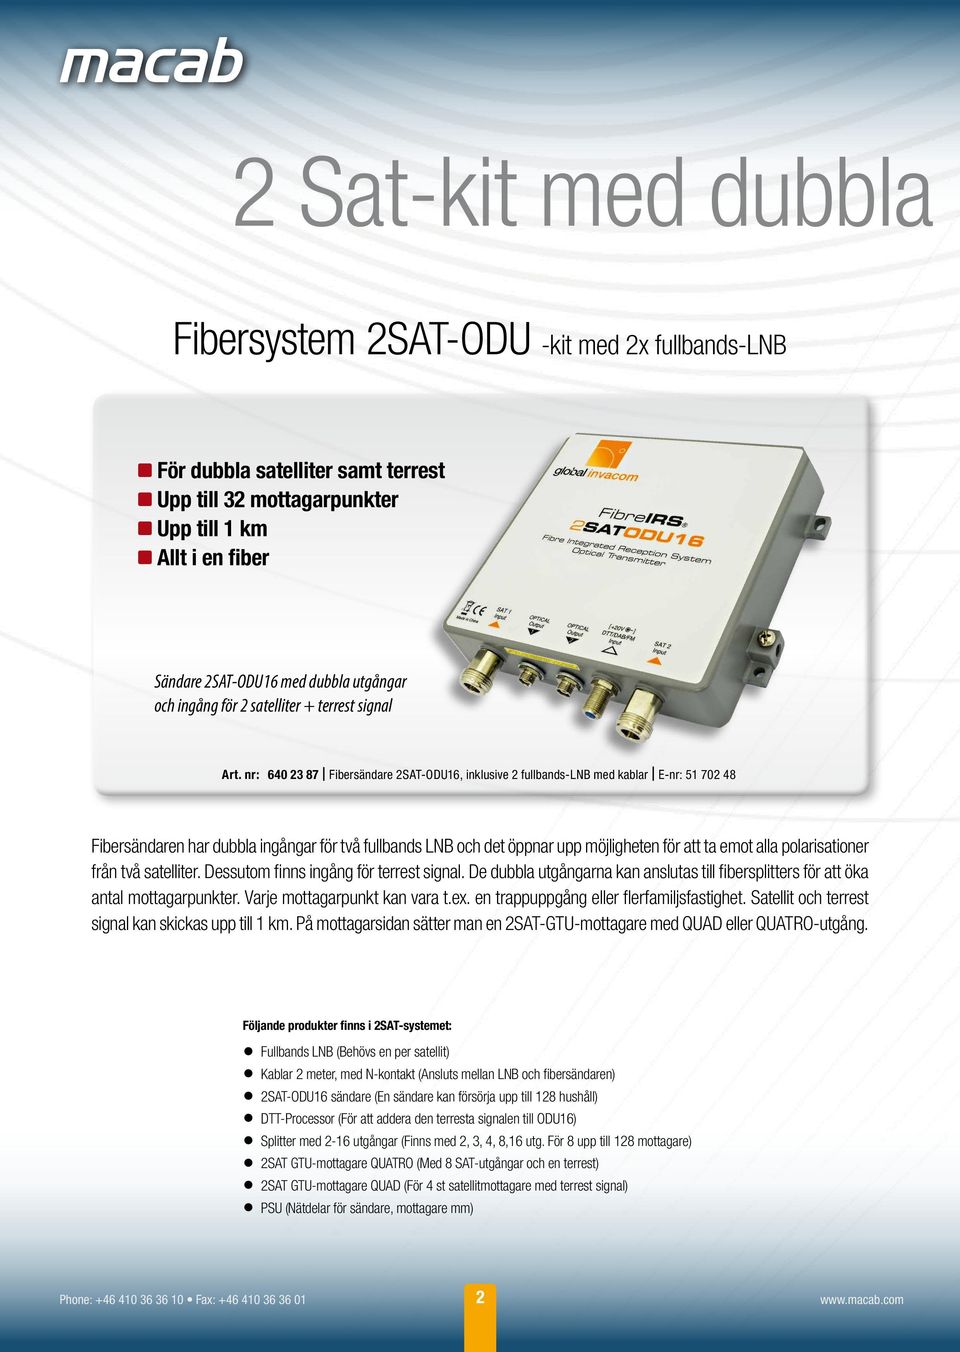 nr: 640 23 87 Fibersändare 2SAT-ODU16, inklusive 2 fullbands-lnb med kablar E-nr: 51 702 48 Fibersändaren har dubbla ingångar för två fullbands LNB och det öppnar upp möjligheten för att ta emot alla